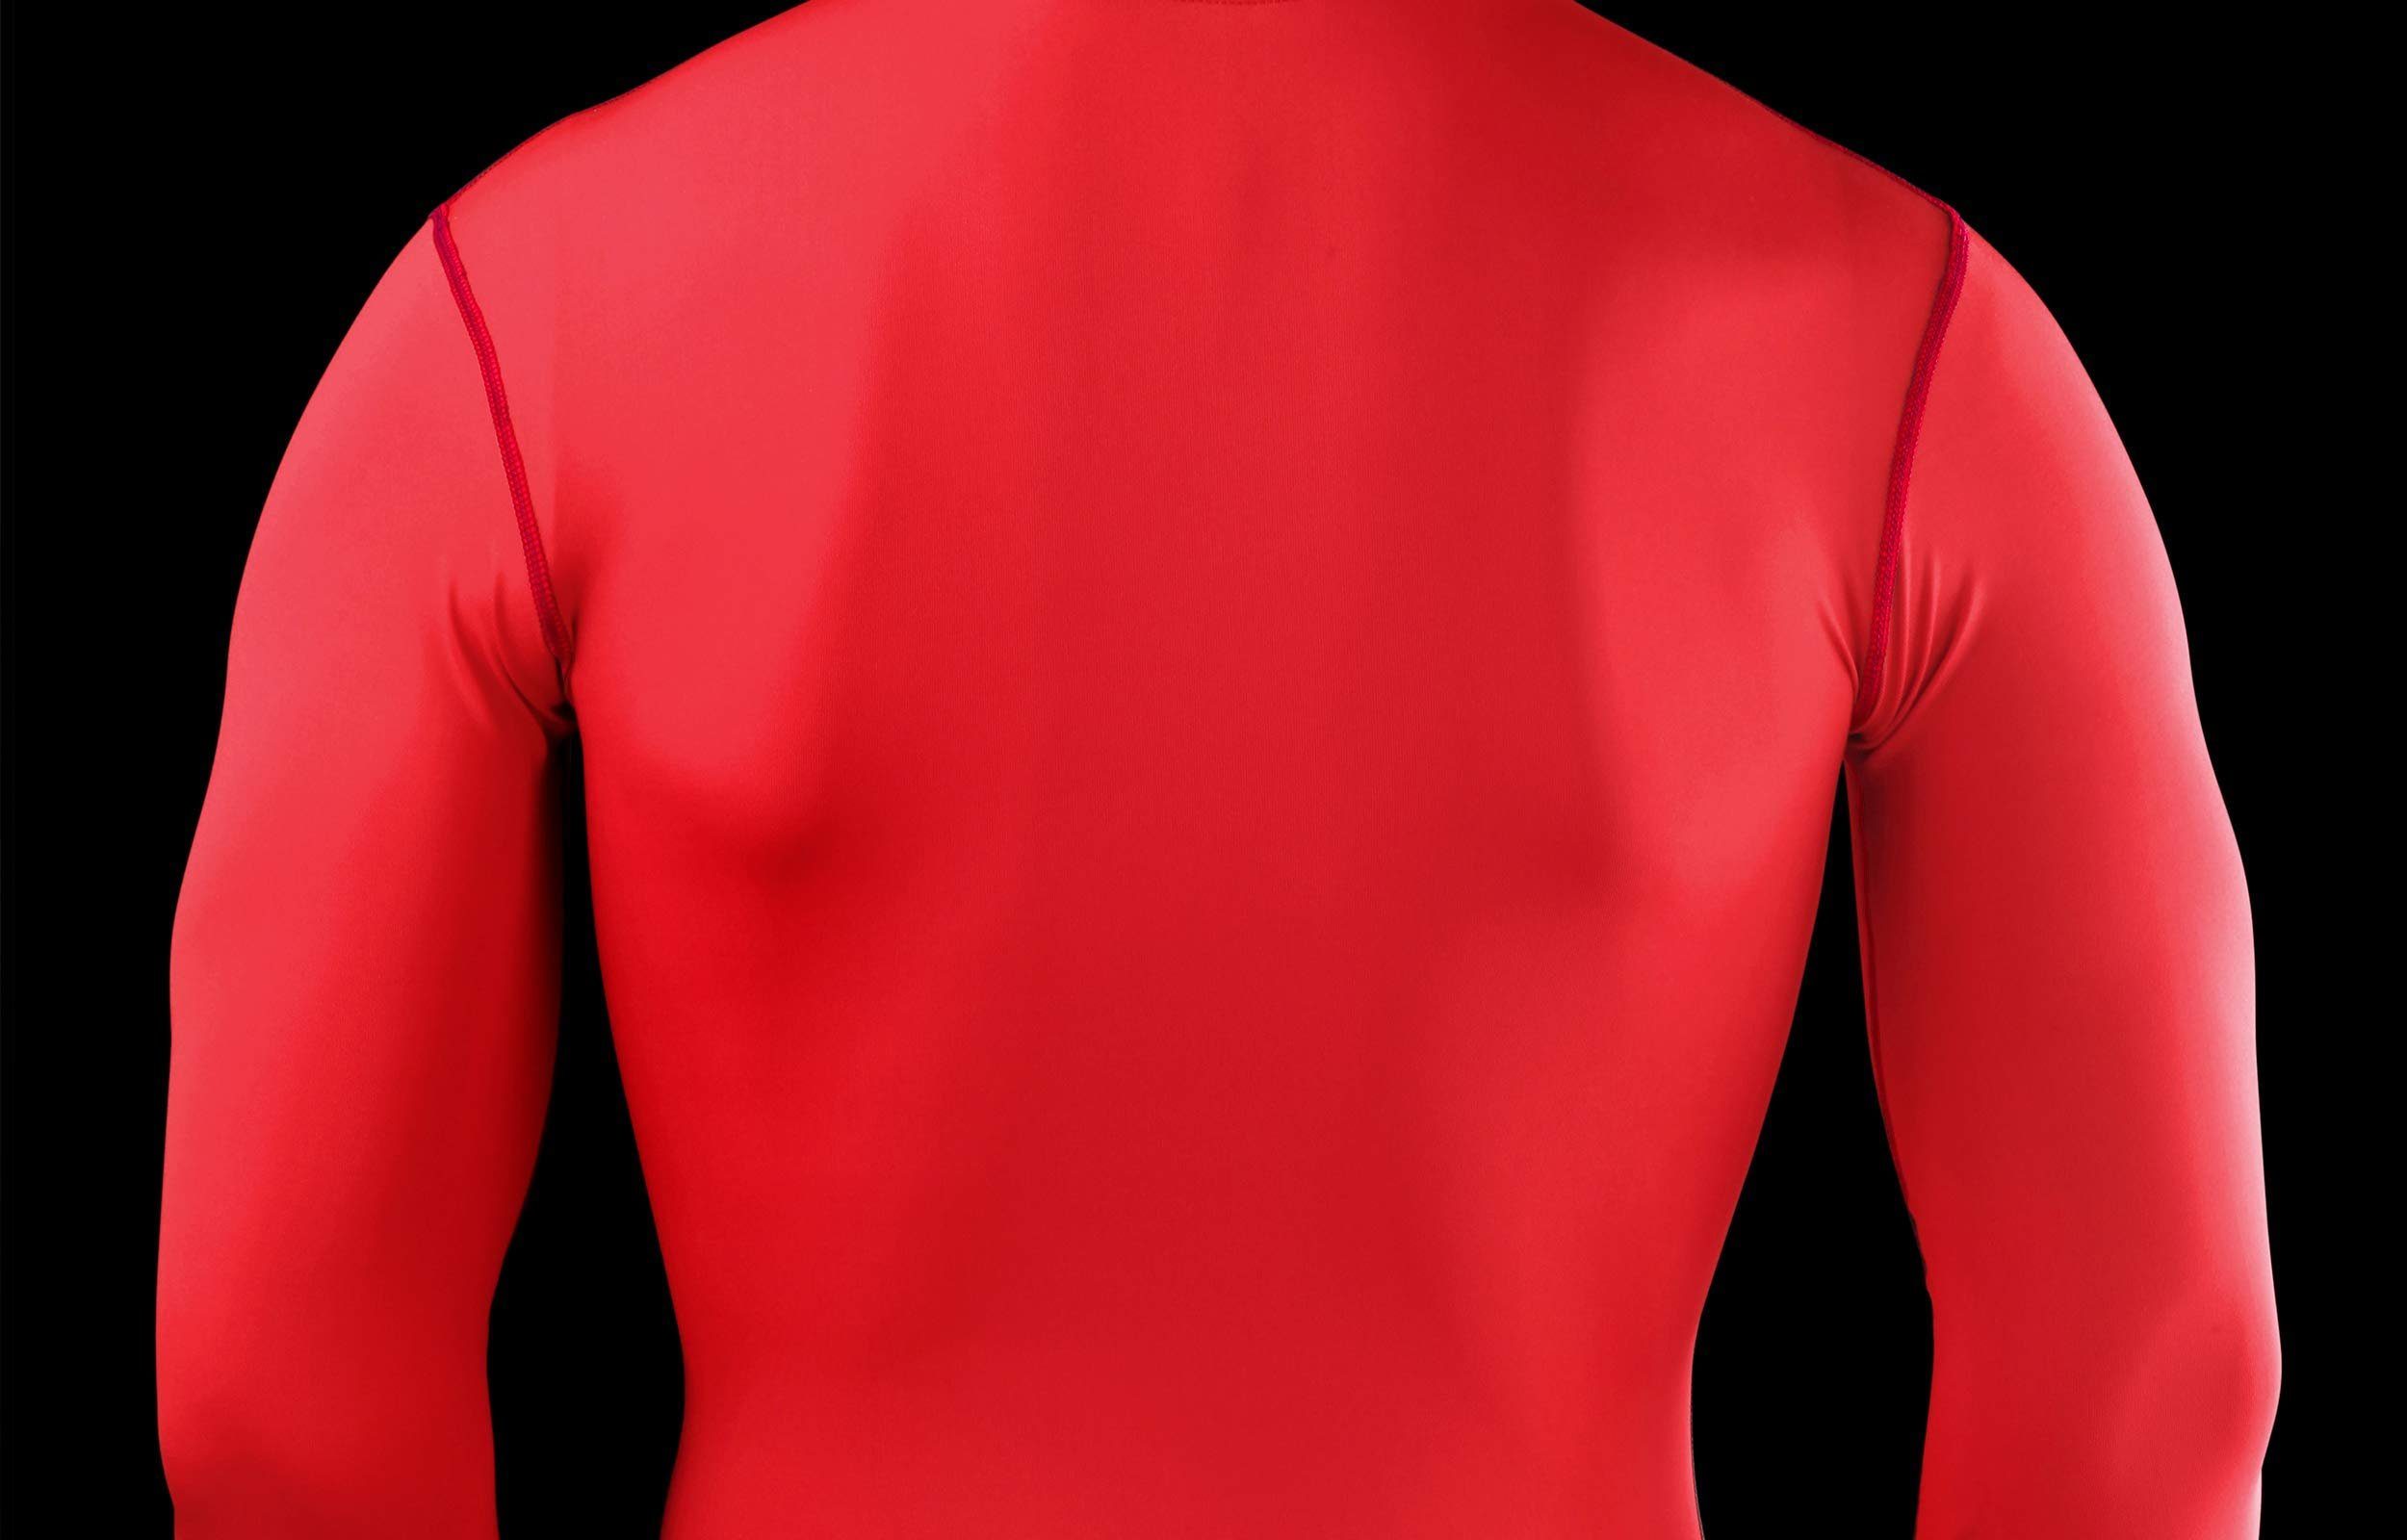 Shirt PowerLayer Rundhalsausschnitt Langarmshirt XS Rot Kompressions POWERLAYER Herren